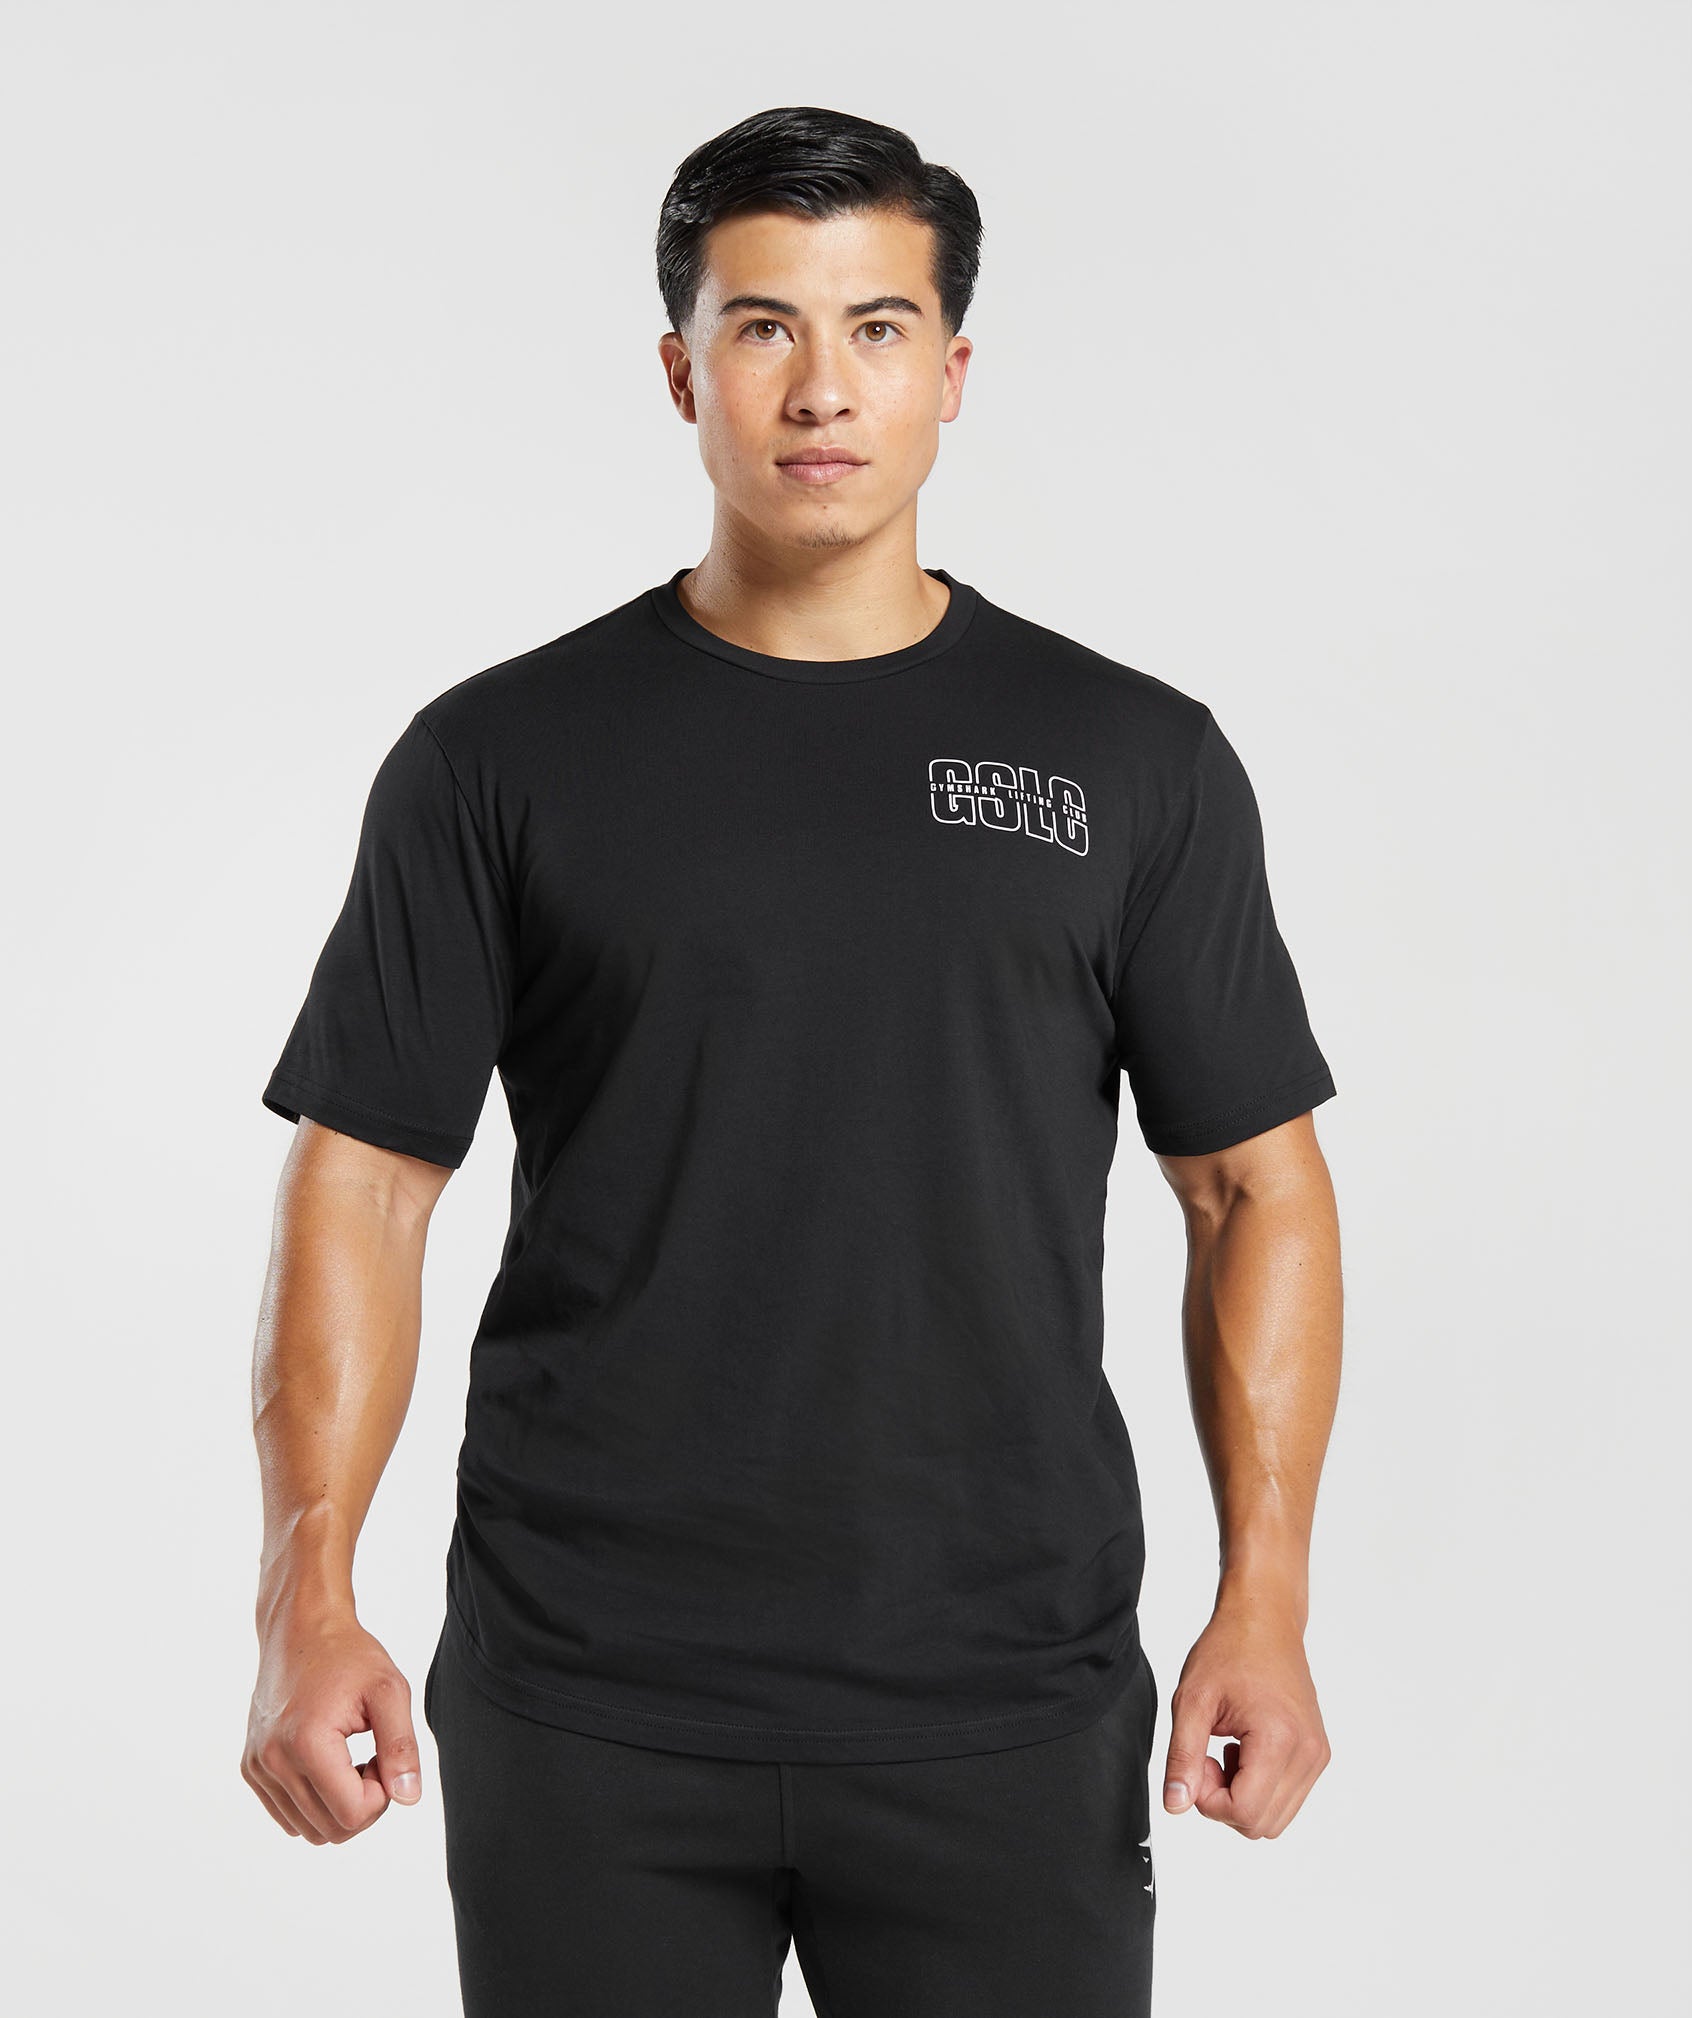 Lifting Club T-Shirt in Black